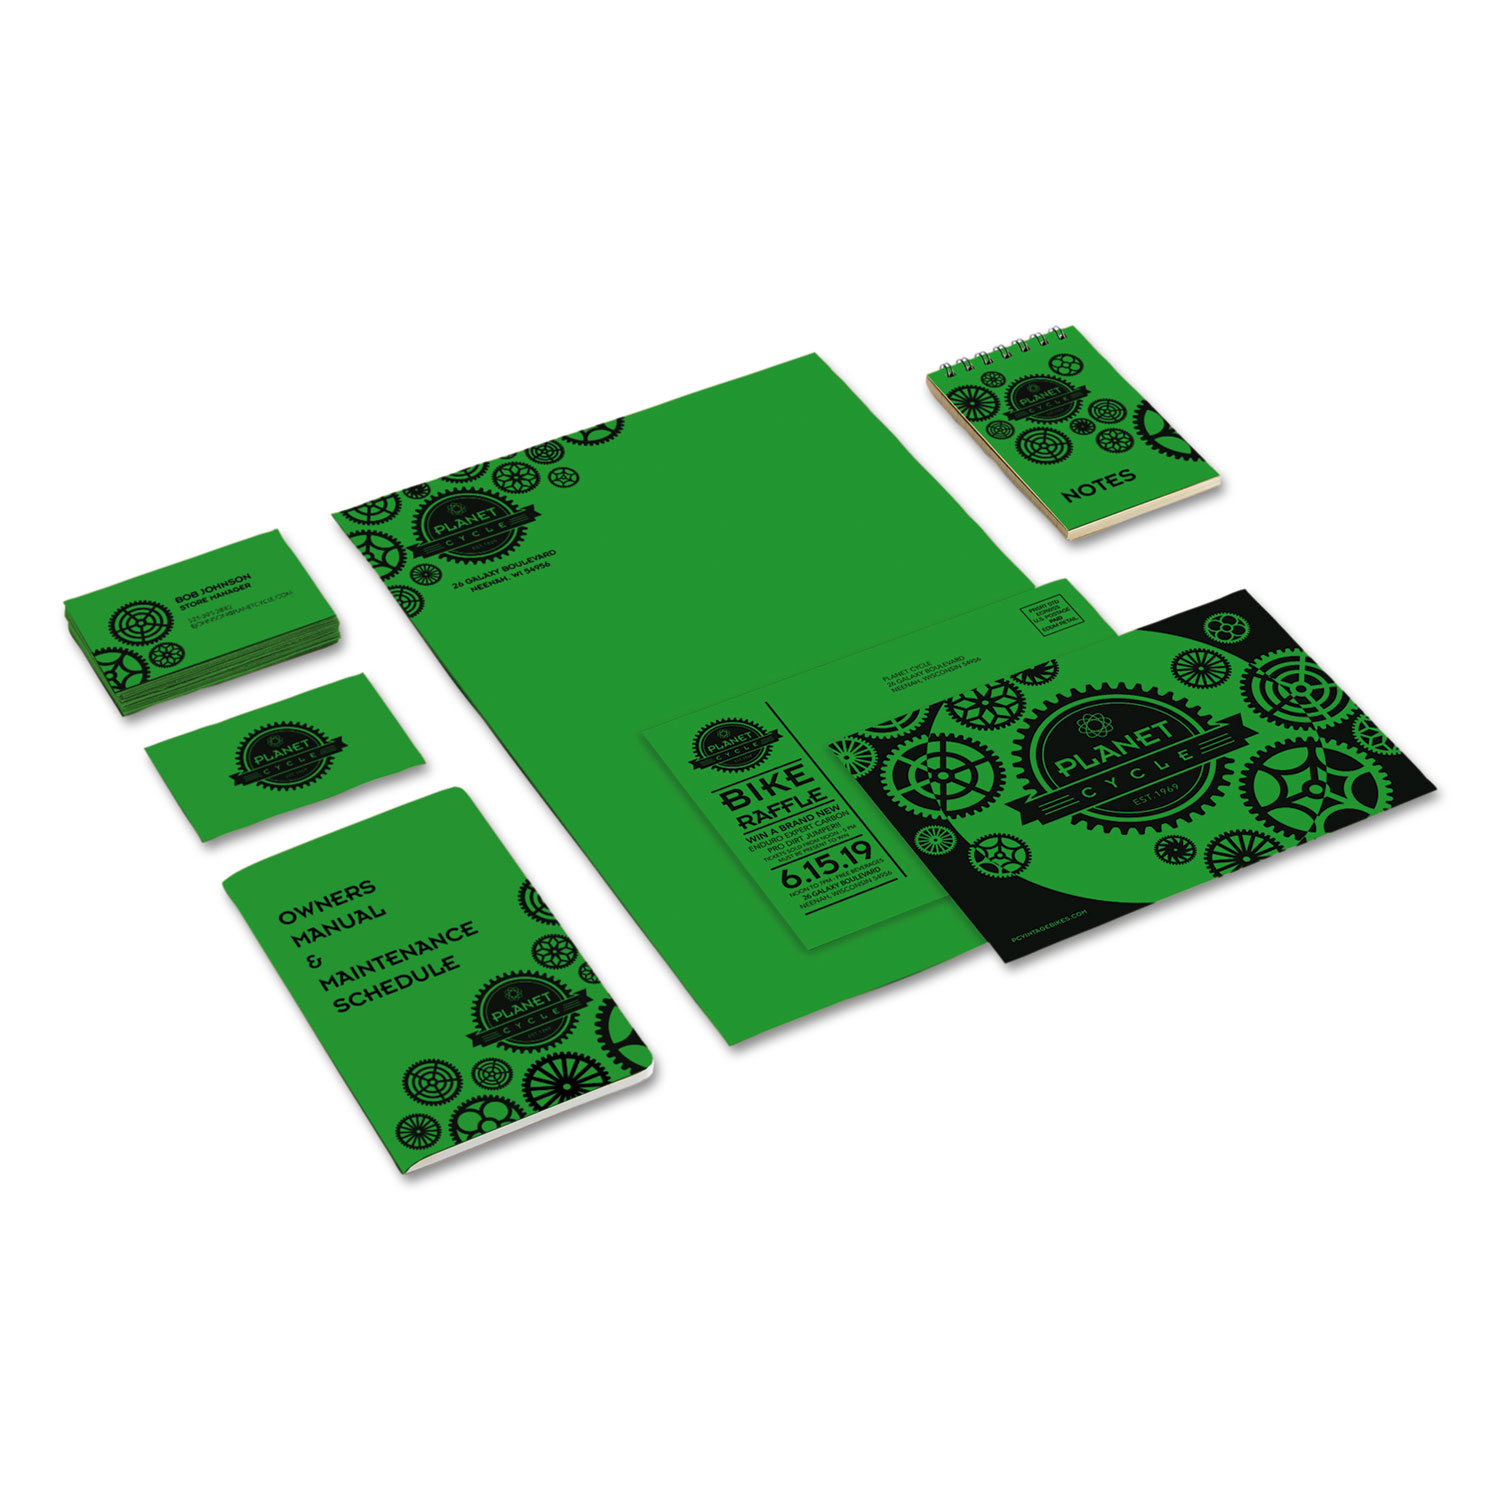 Astrobrights Color Cardstock, 65lb, 8.5 x 11, Lift-Off Lemon, 250/Pack